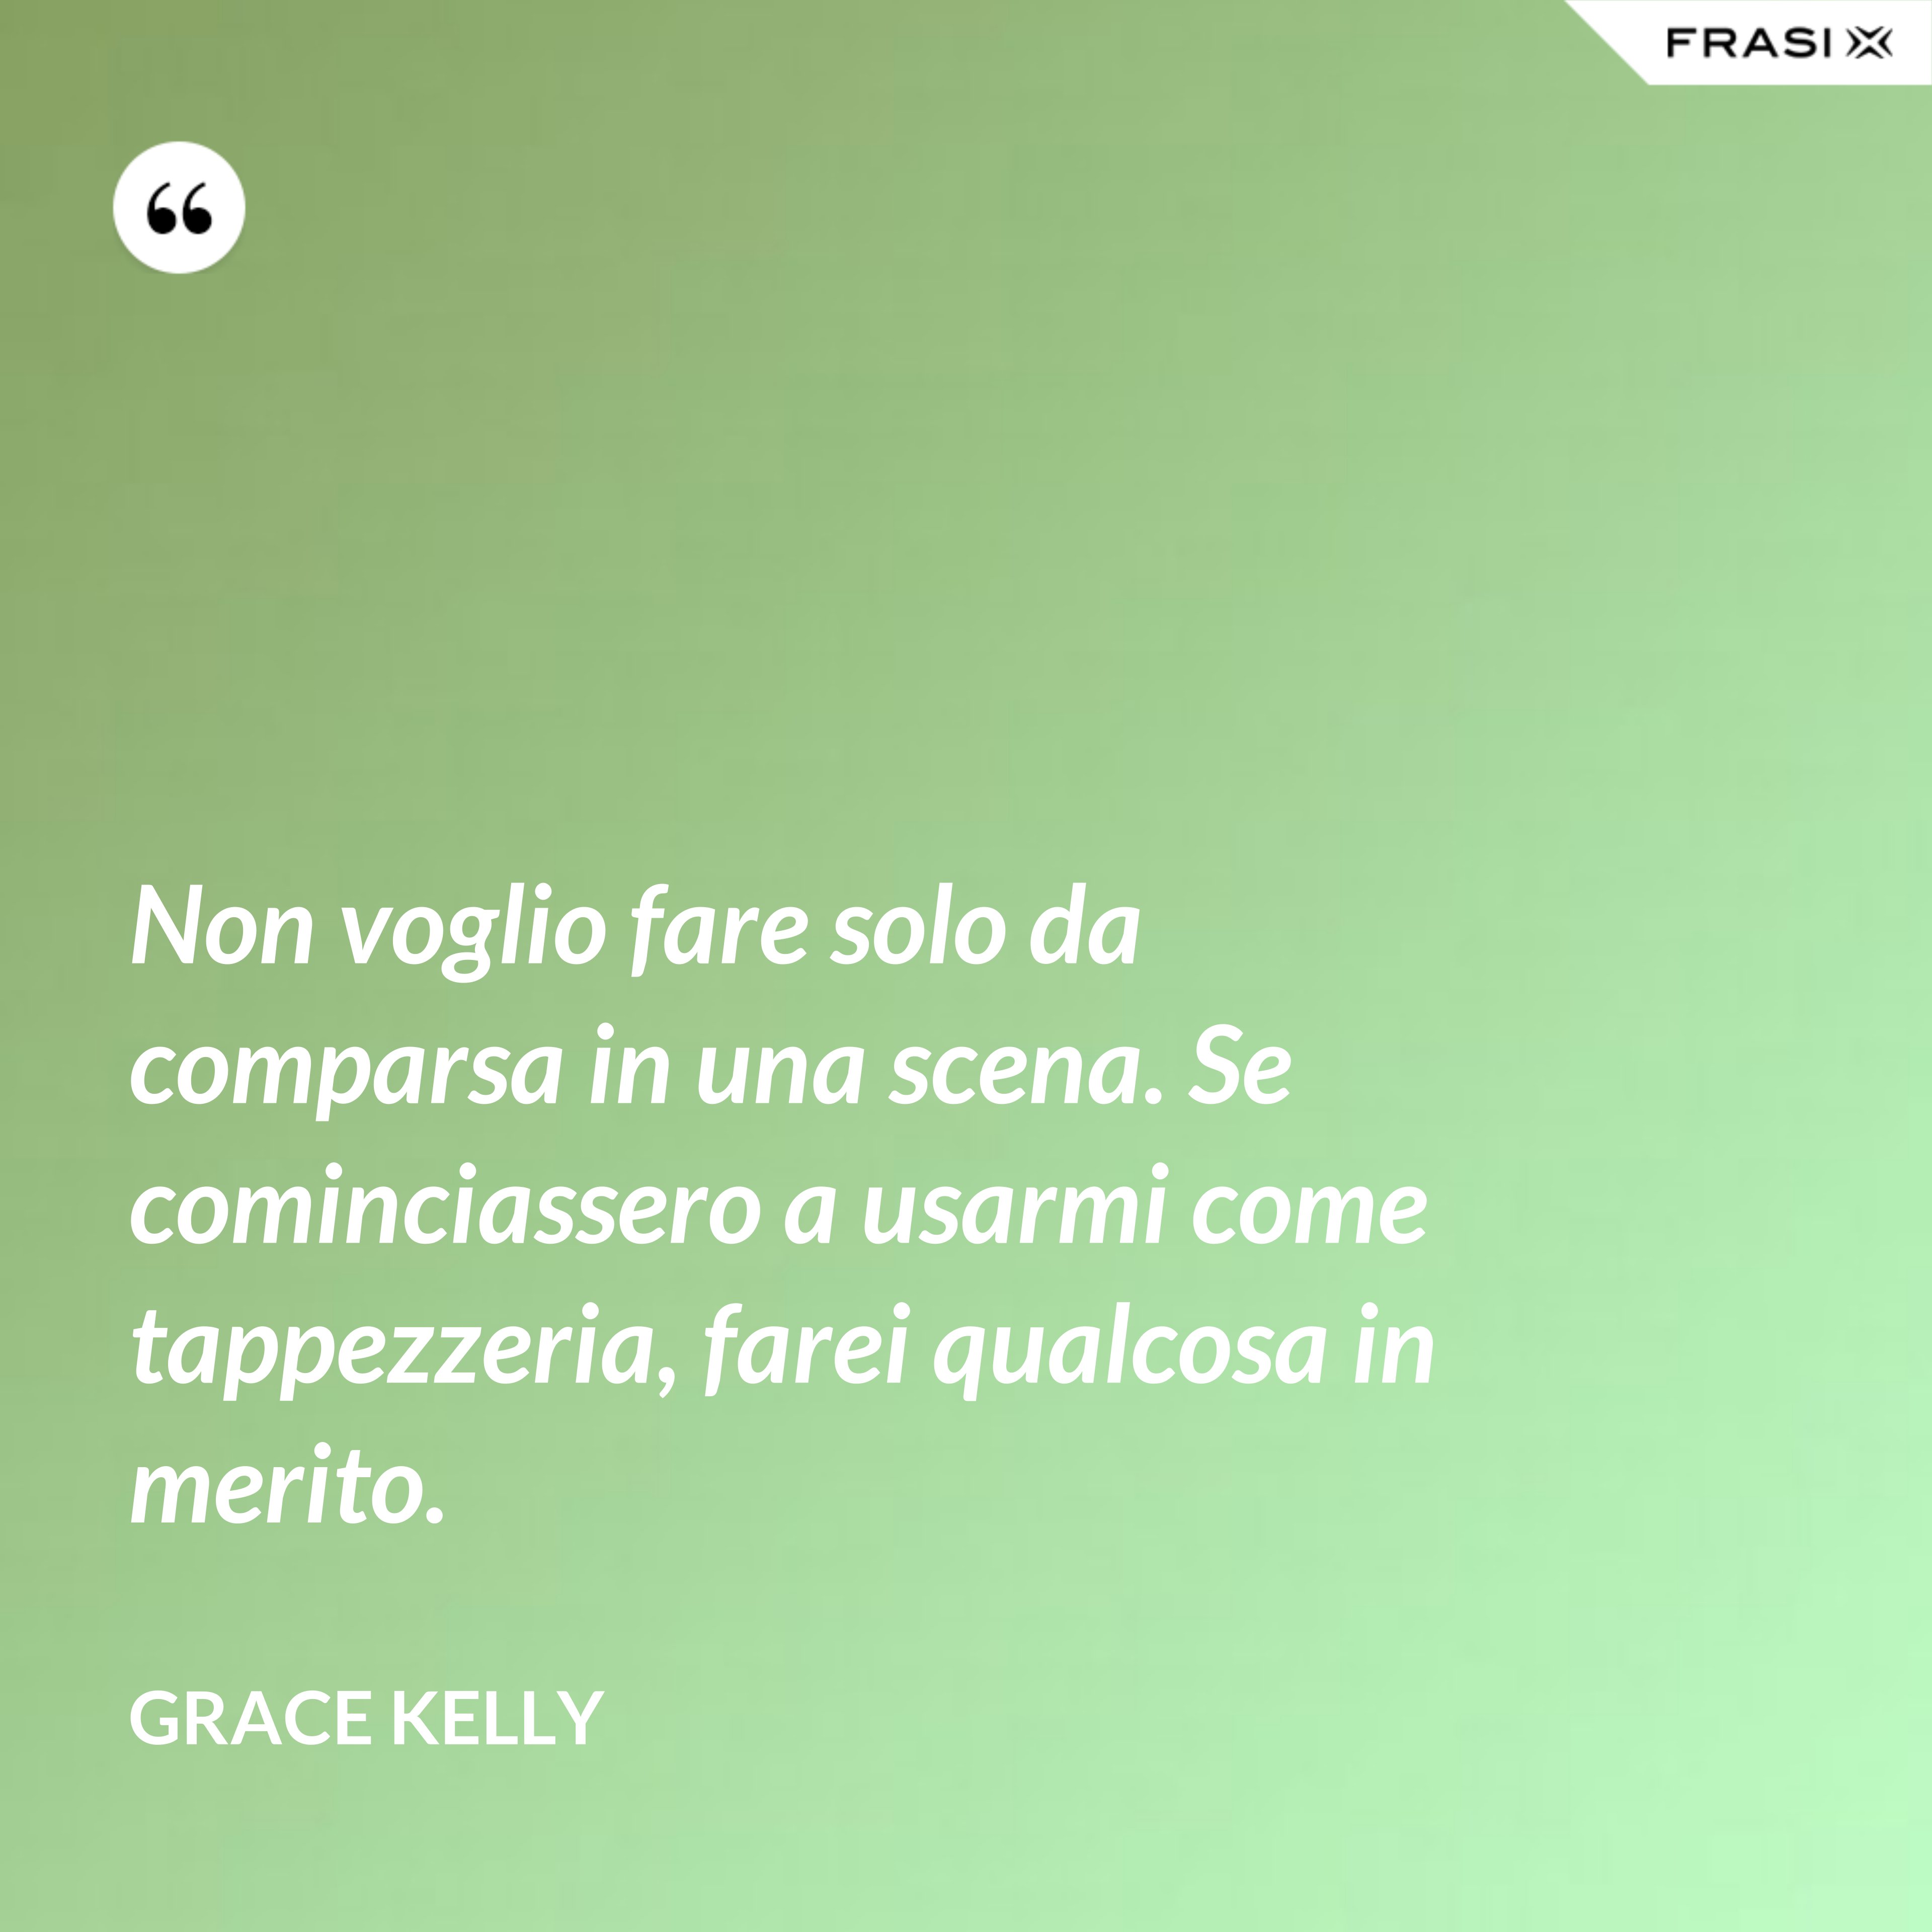 Non voglio fare solo da comparsa in una scena. Se cominciassero a usarmi come tappezzeria, farei qualcosa in merito. - Grace Kelly